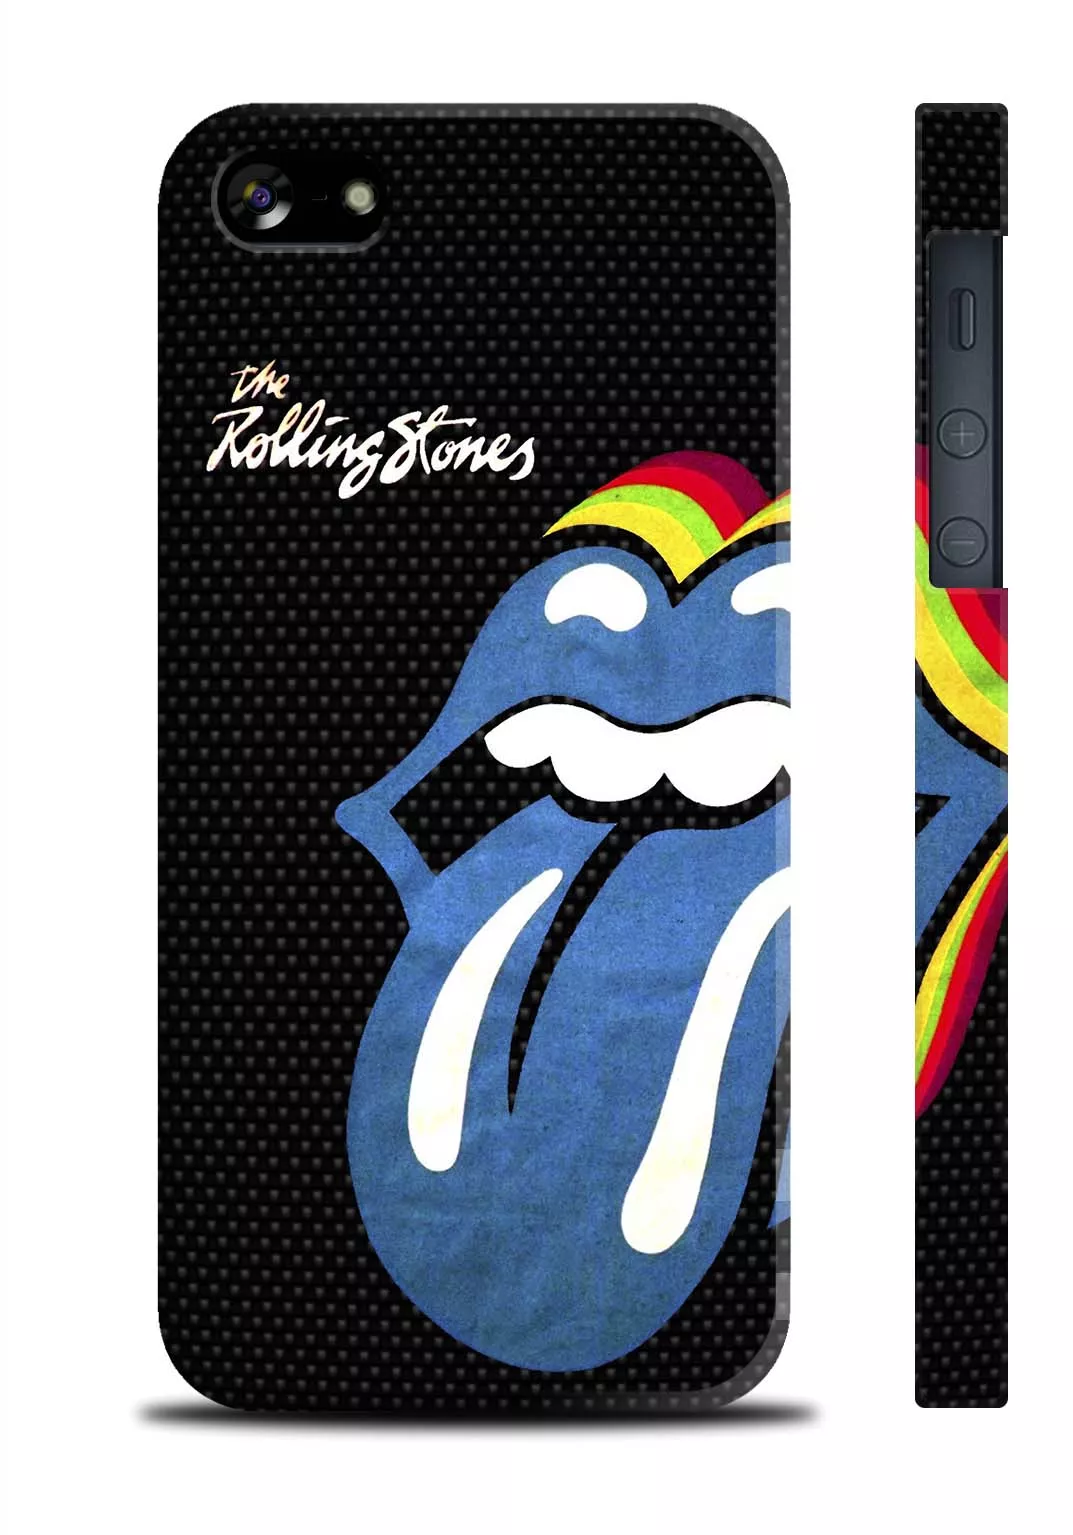 Купить чехол с 3D печатью для Айфон 5, Айфон 5S - Rolling Stones Blue